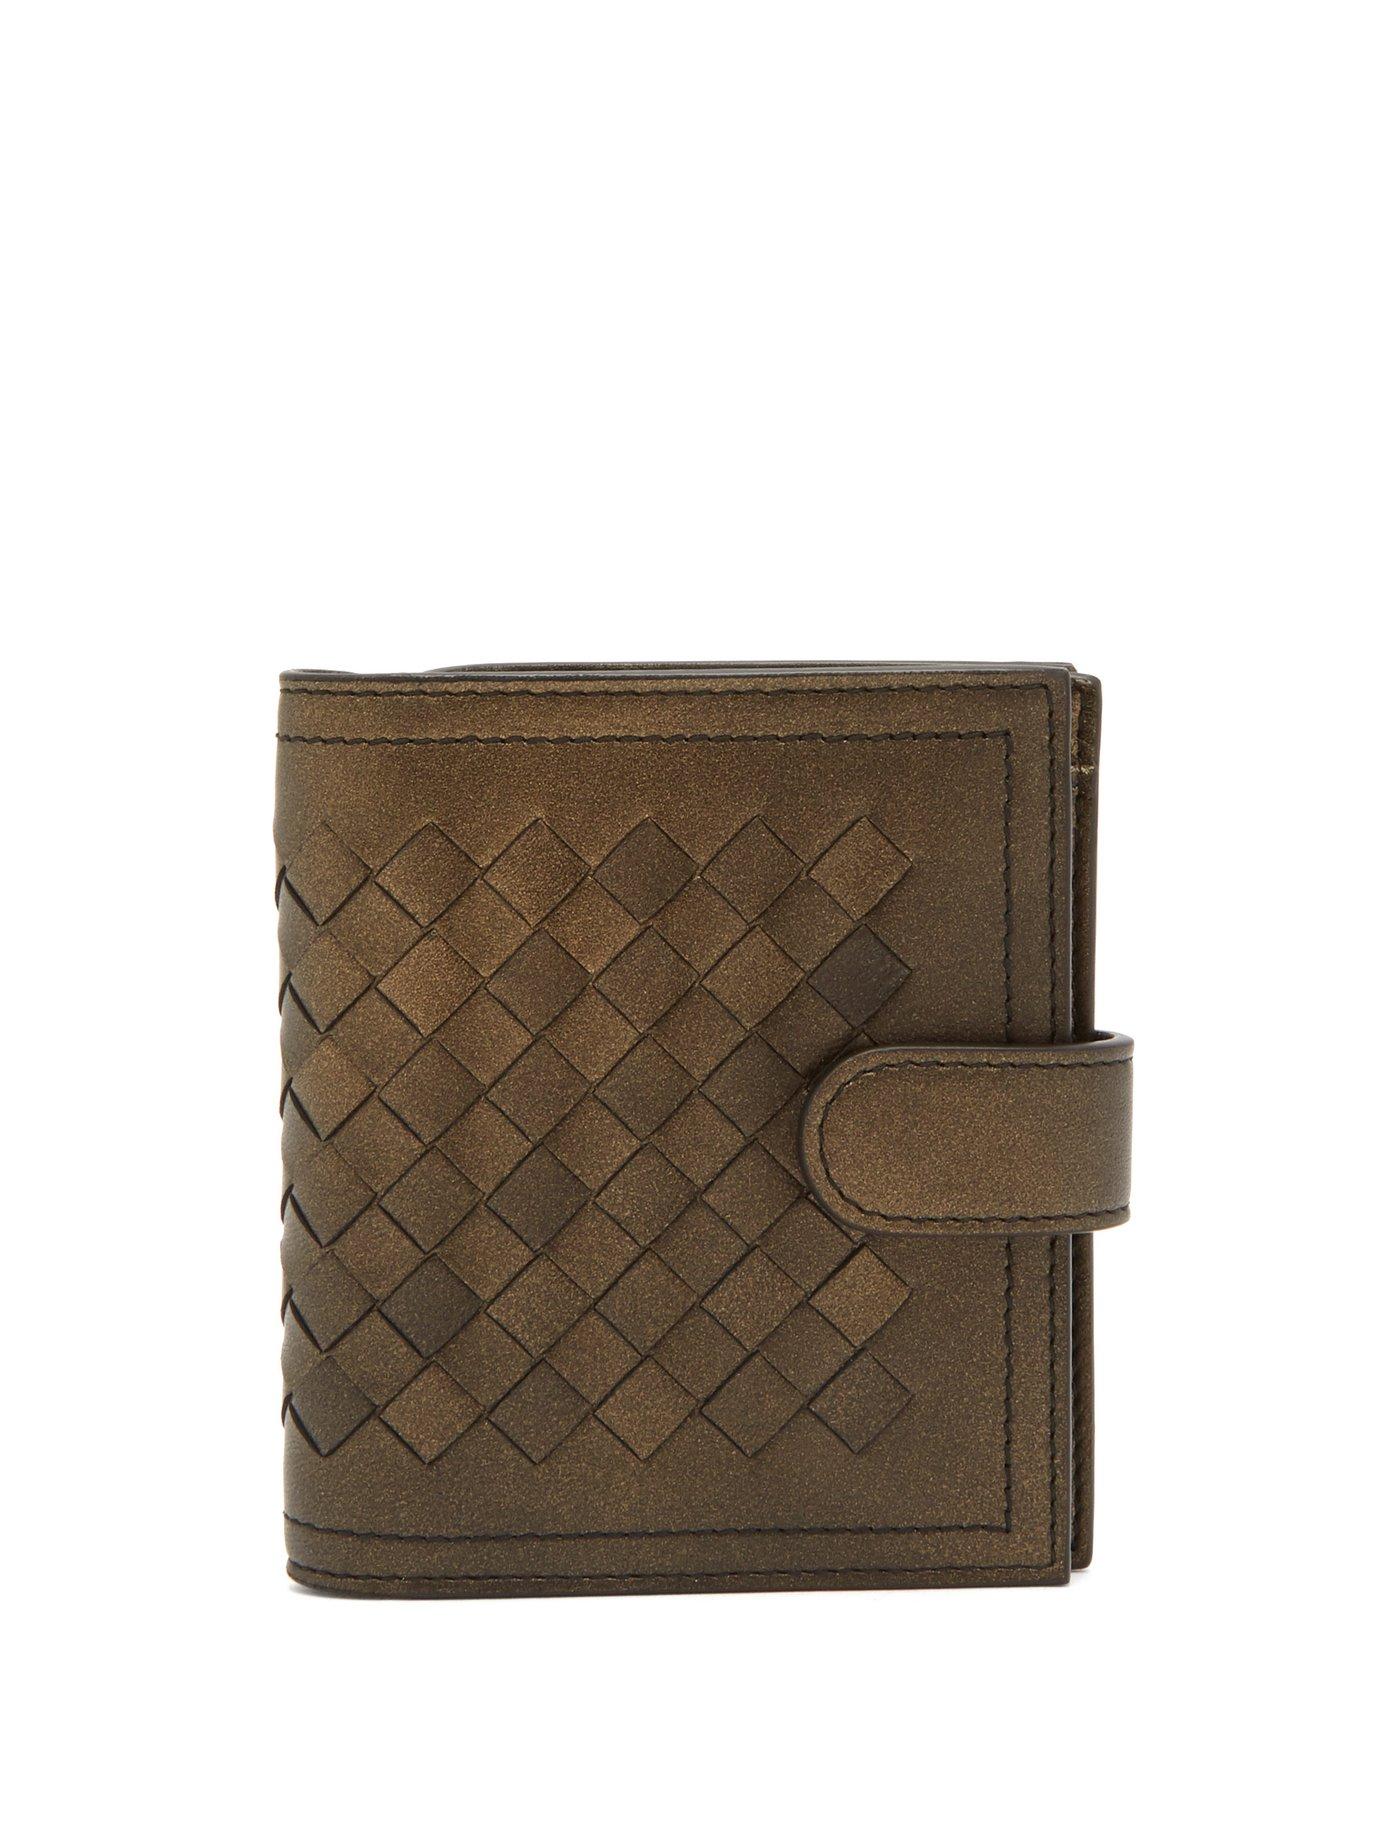 Bottega Veneta Intrecciato Bi-fold Leather Wallet In Gold | ModeSens